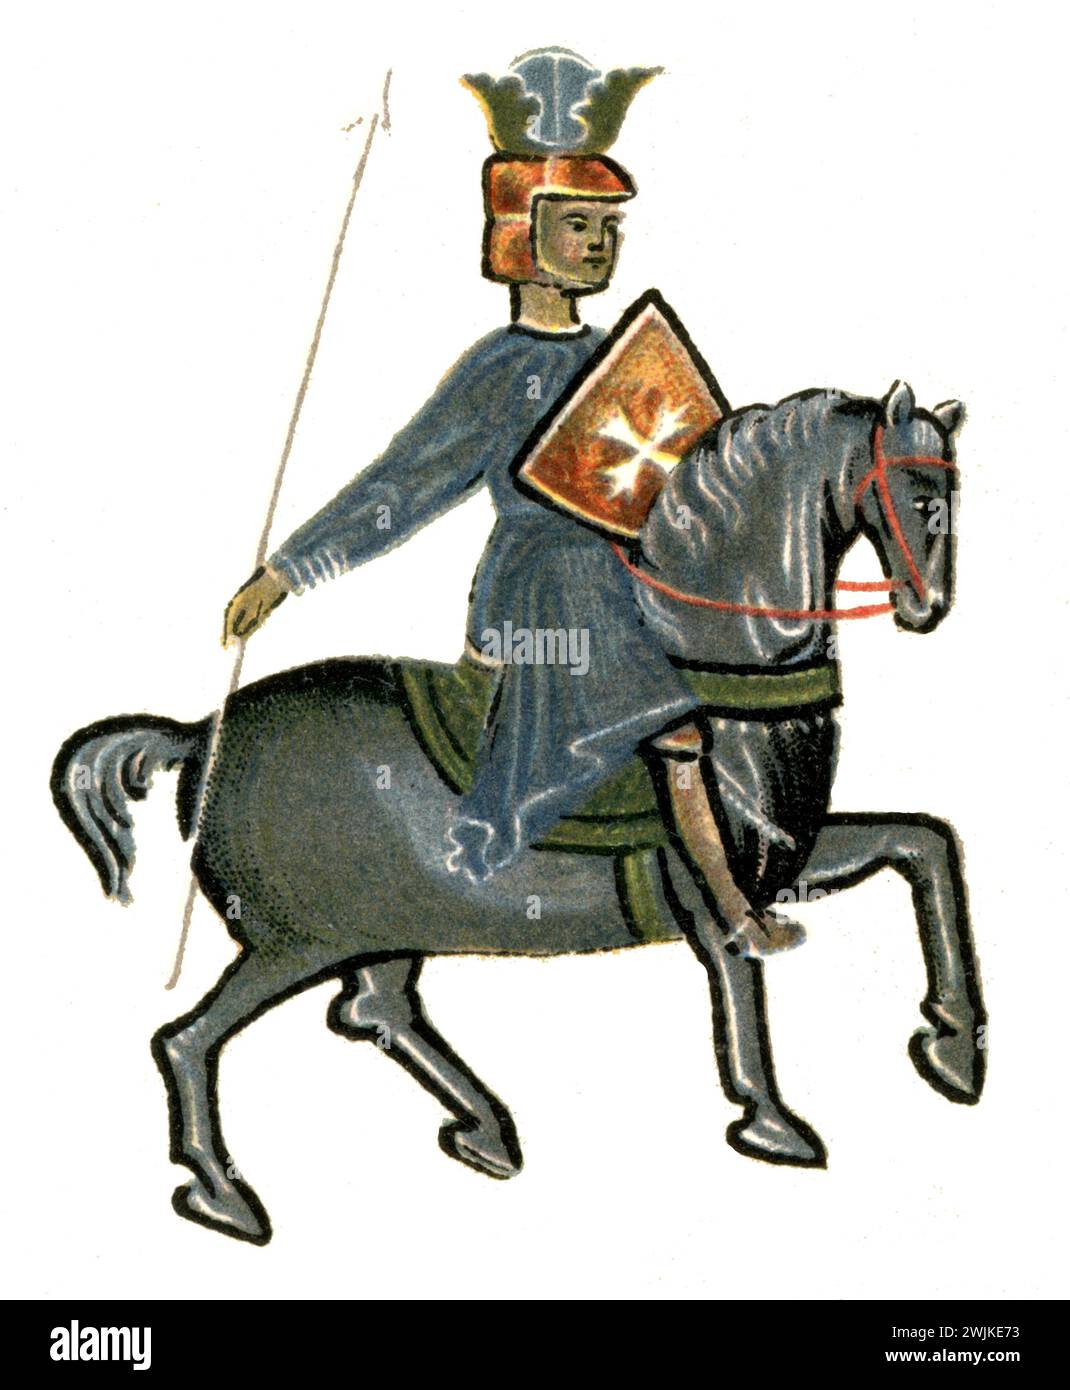 Medieval troubadours: King with shield and lance on a horse ,  (literary history book, 1900), Mittelalterliche Troubadoure: König mit Schild und Lanze auf einem Pferd Stock Photo